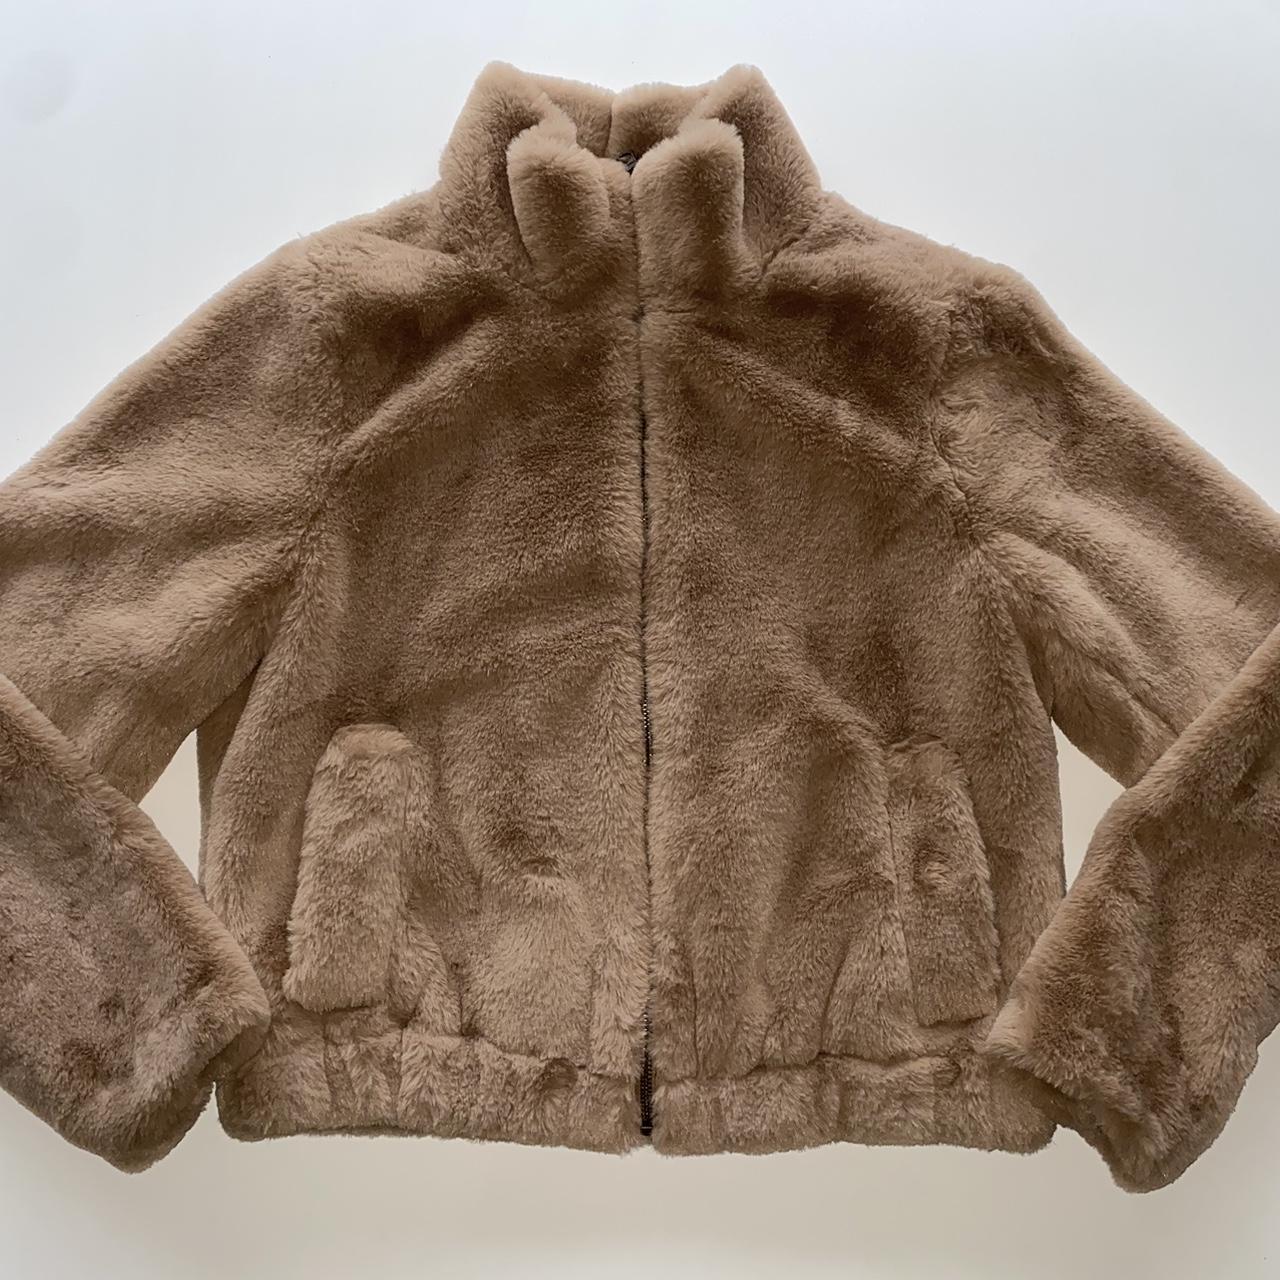 Small (size 0-2) tan/brown faux fur jacket. Still - Depop